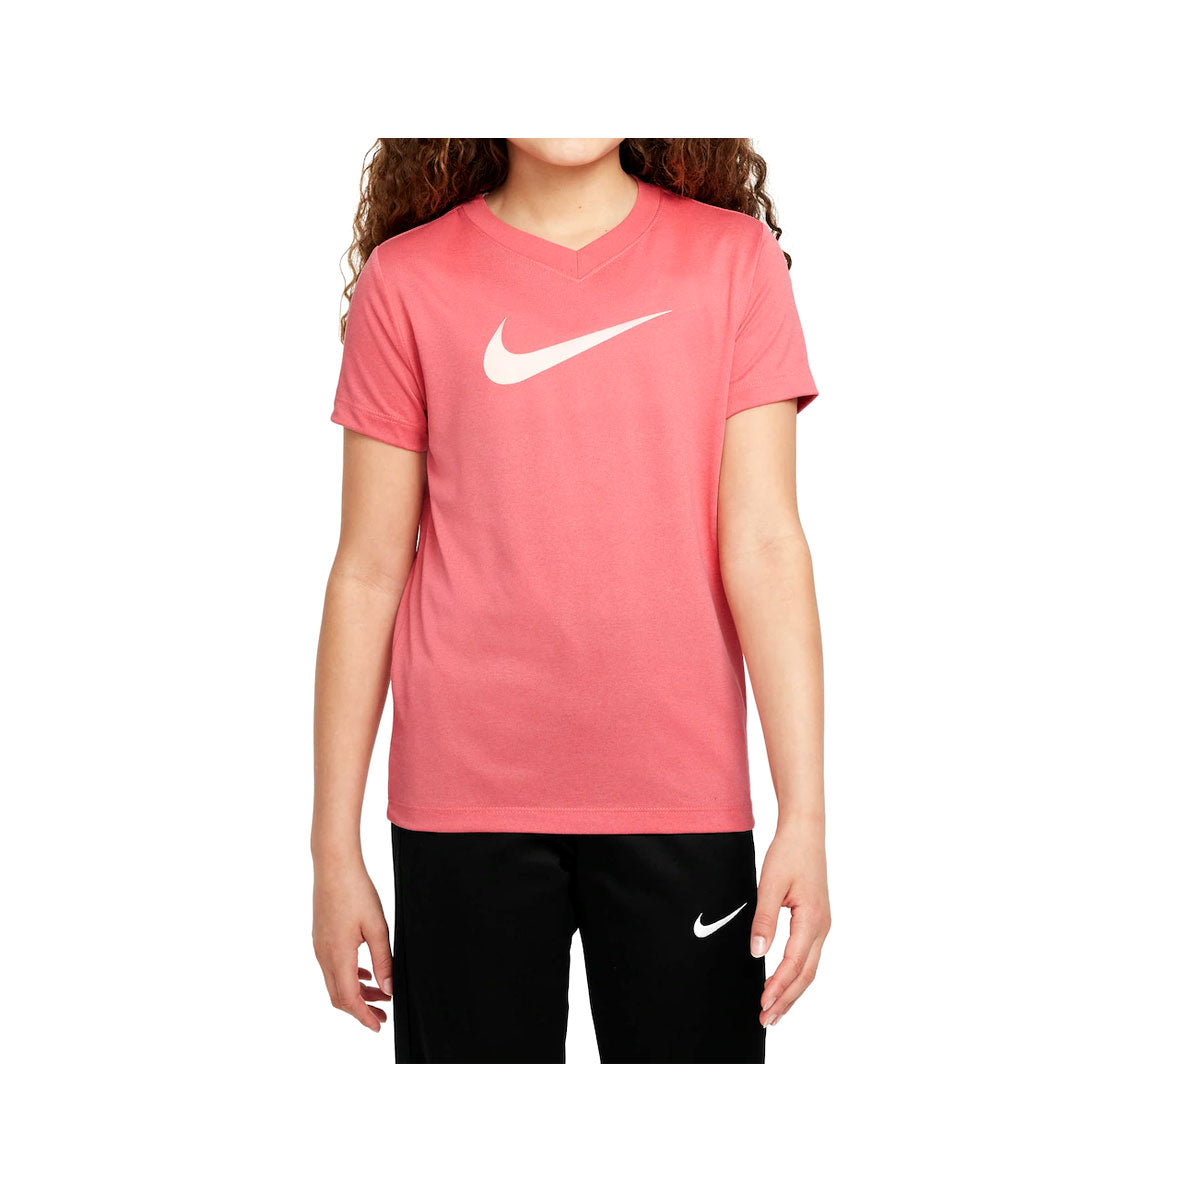 Nike Girl's Dri-FIT Swoosh Tee